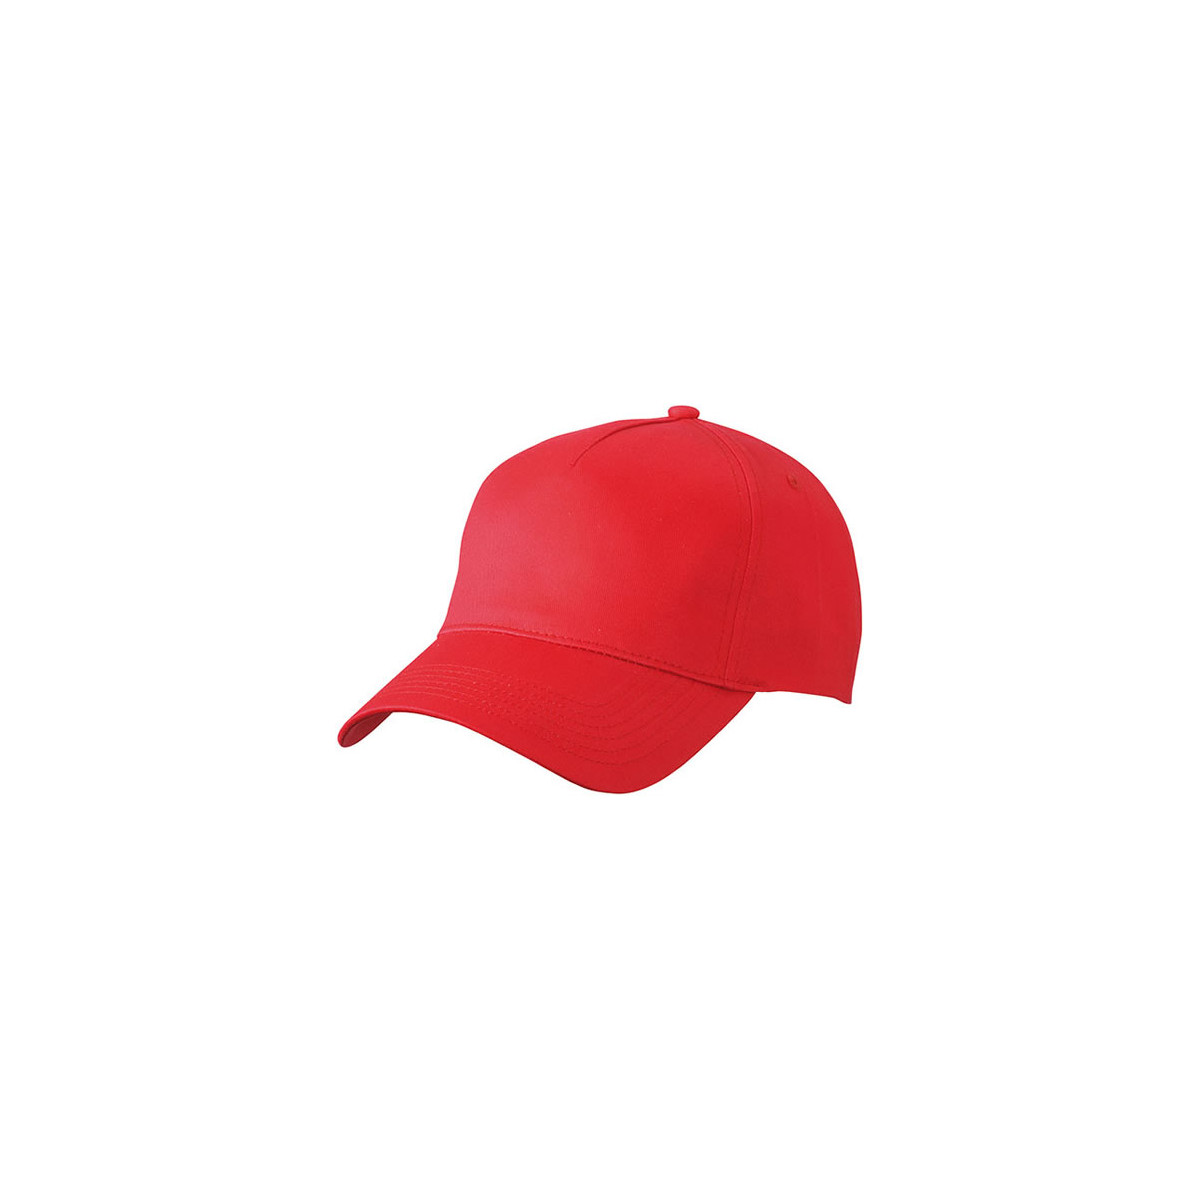 czapki-bhp-z-daszkiem - Czapka z daszkiem czerwona red pięciopanelowa